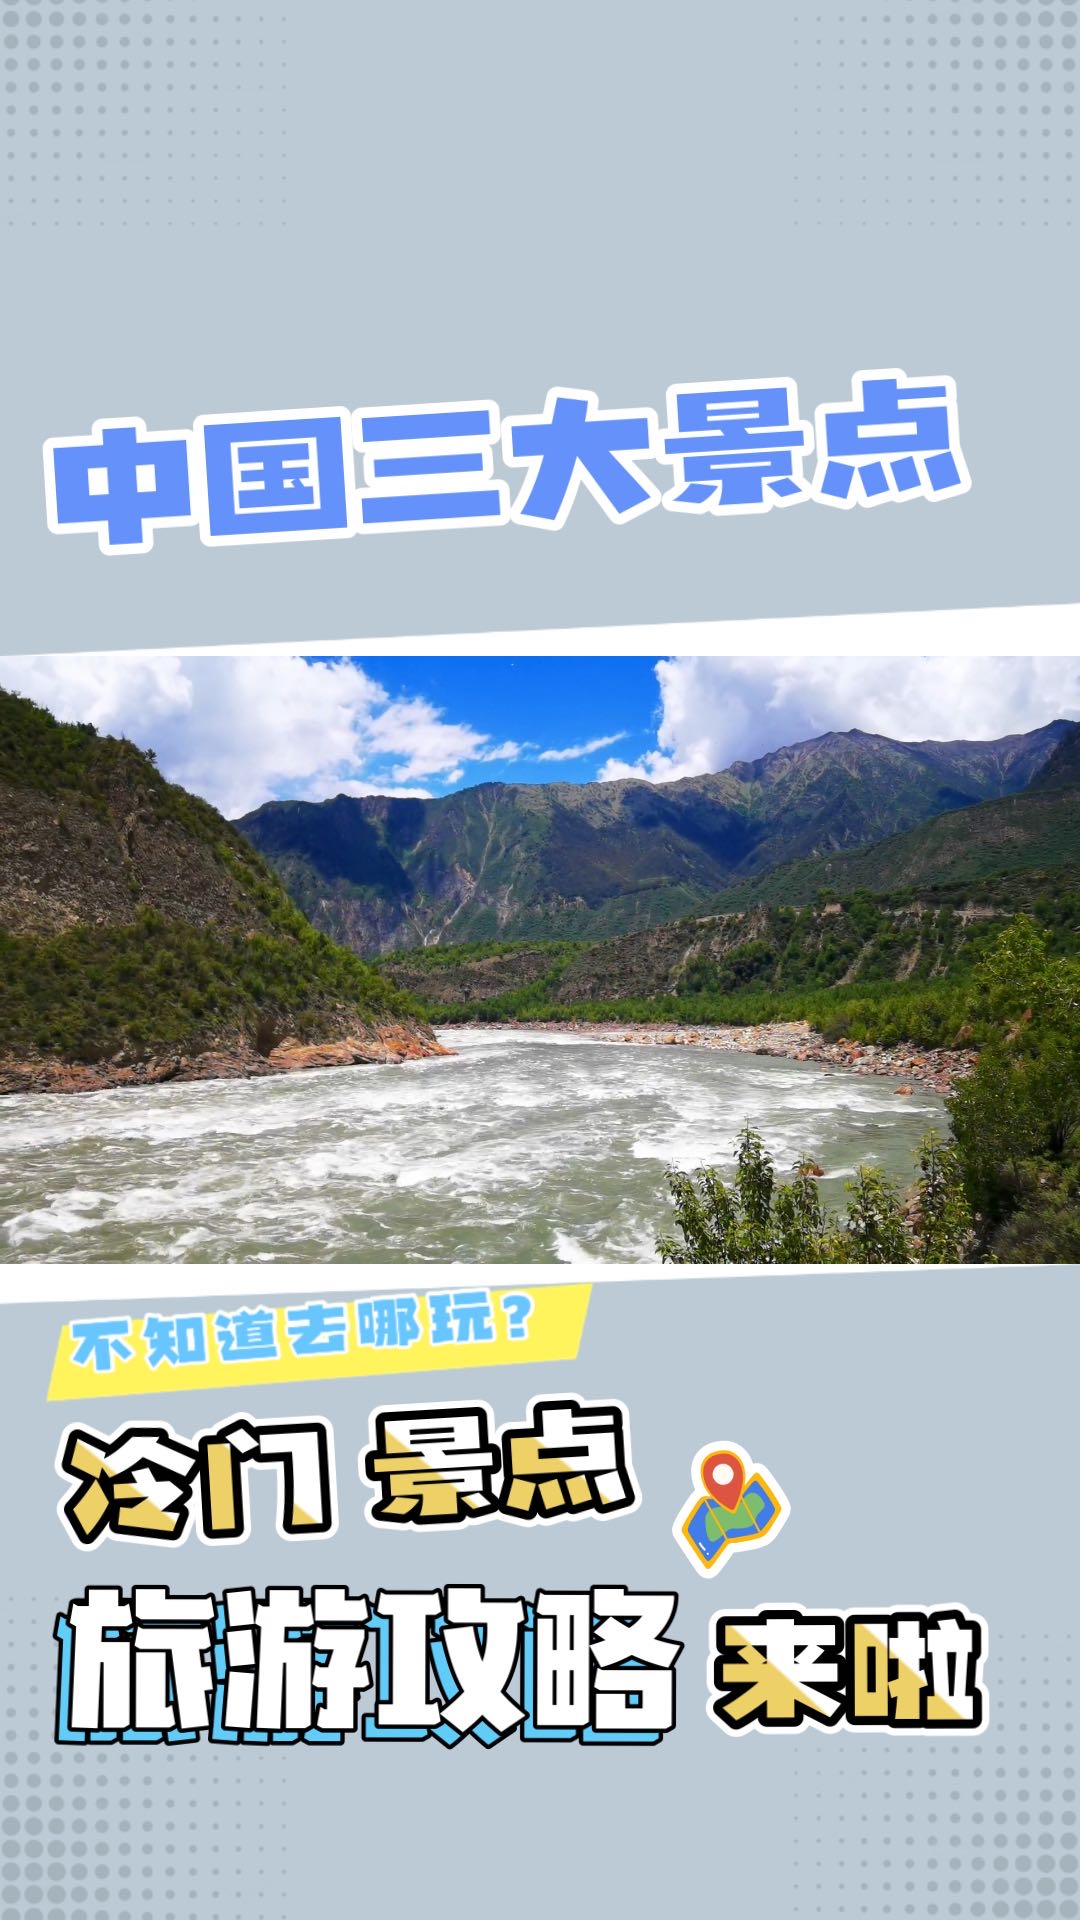 【冷门但好看】中国三大自然景观